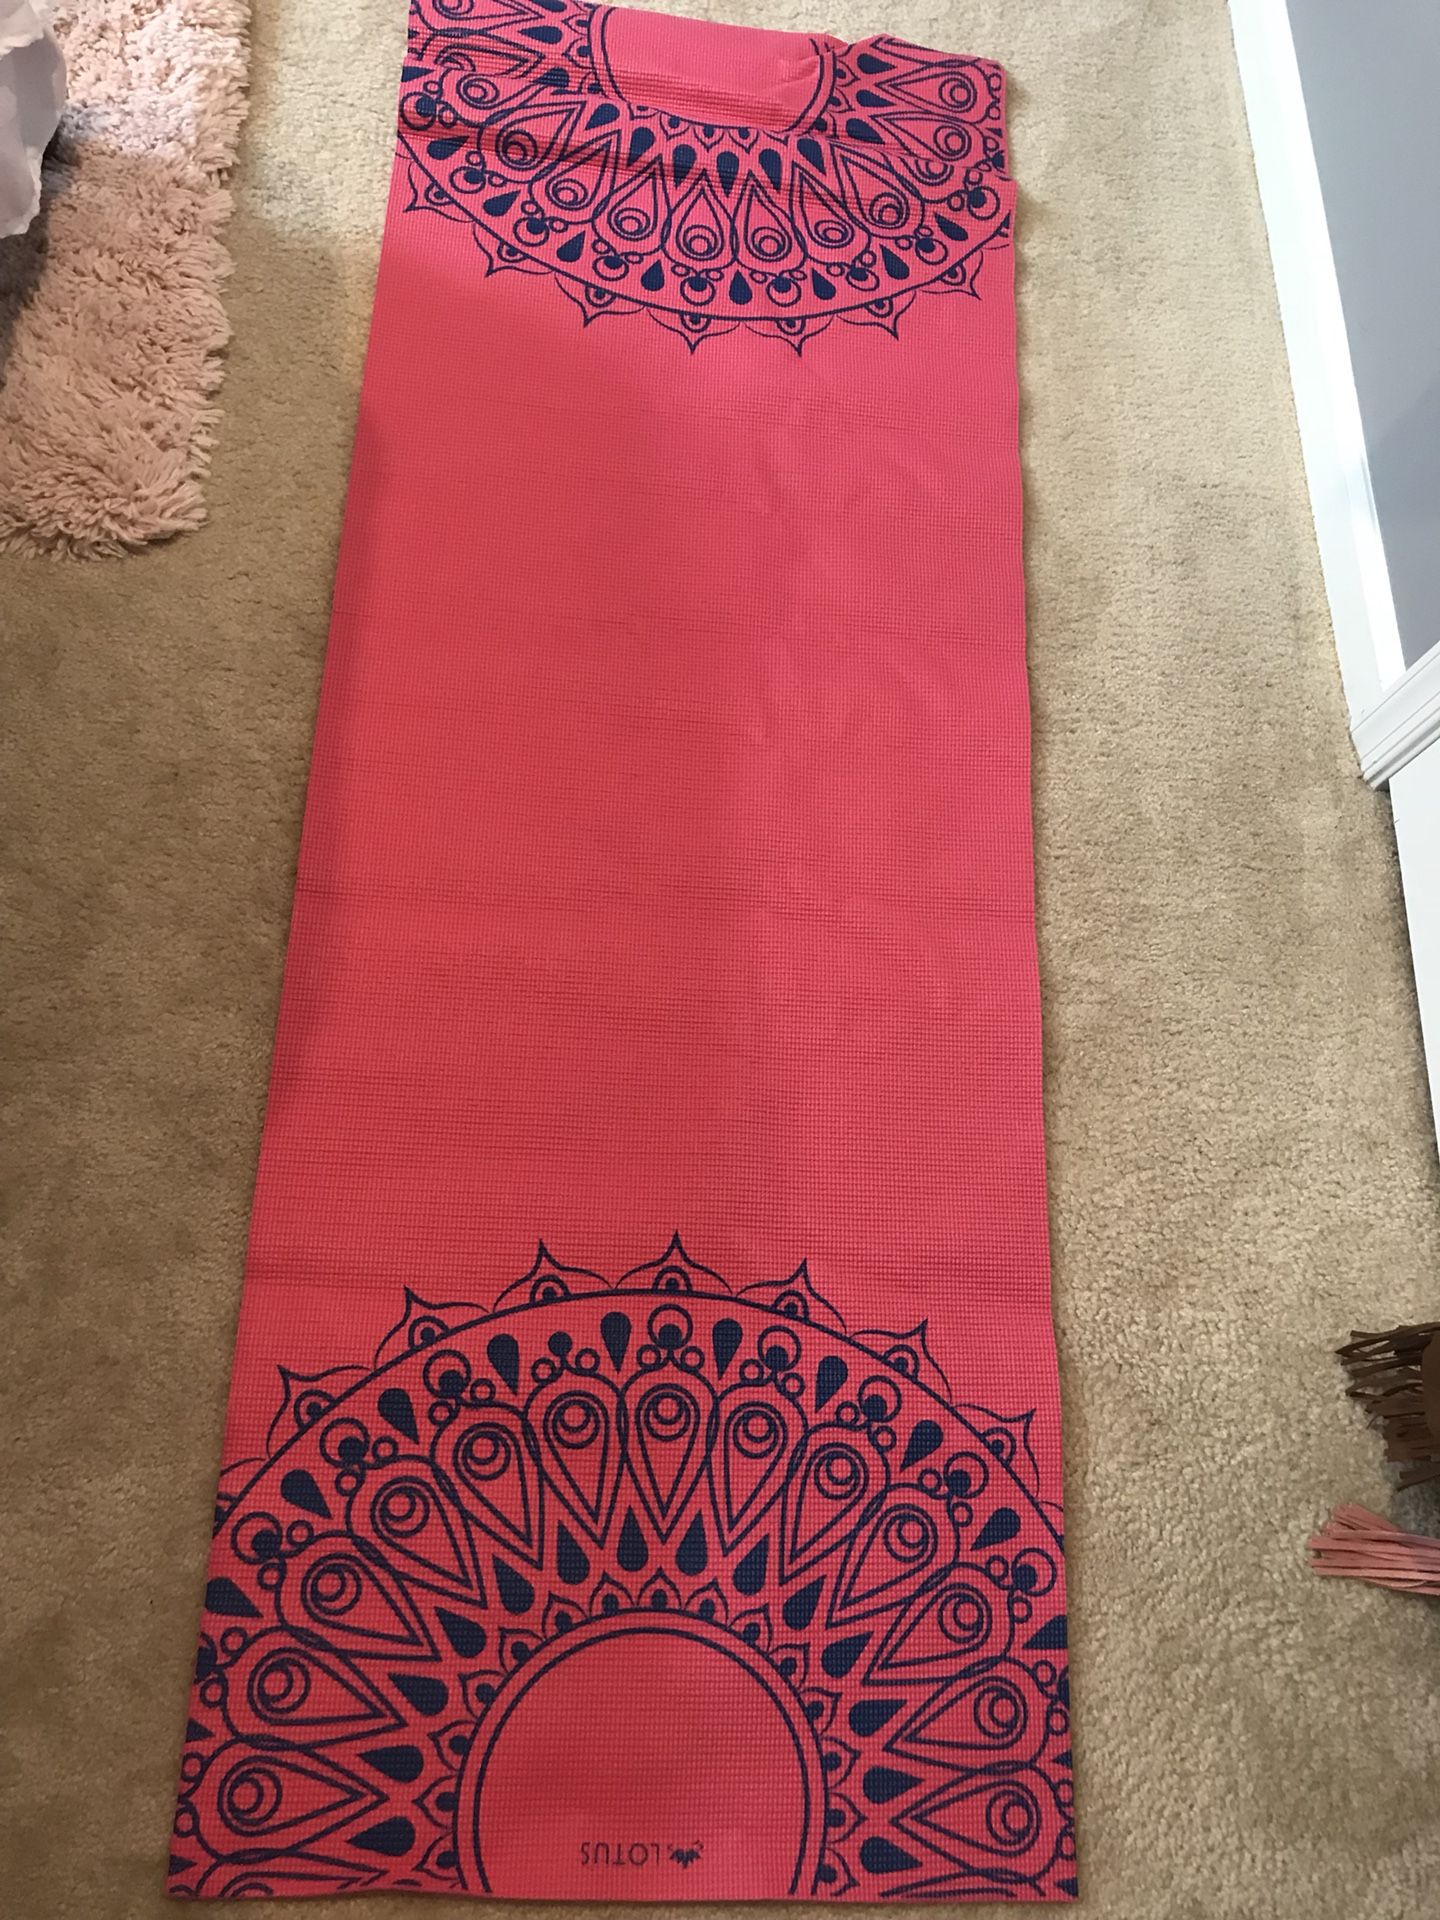 Pink Lotus Yoga Mat